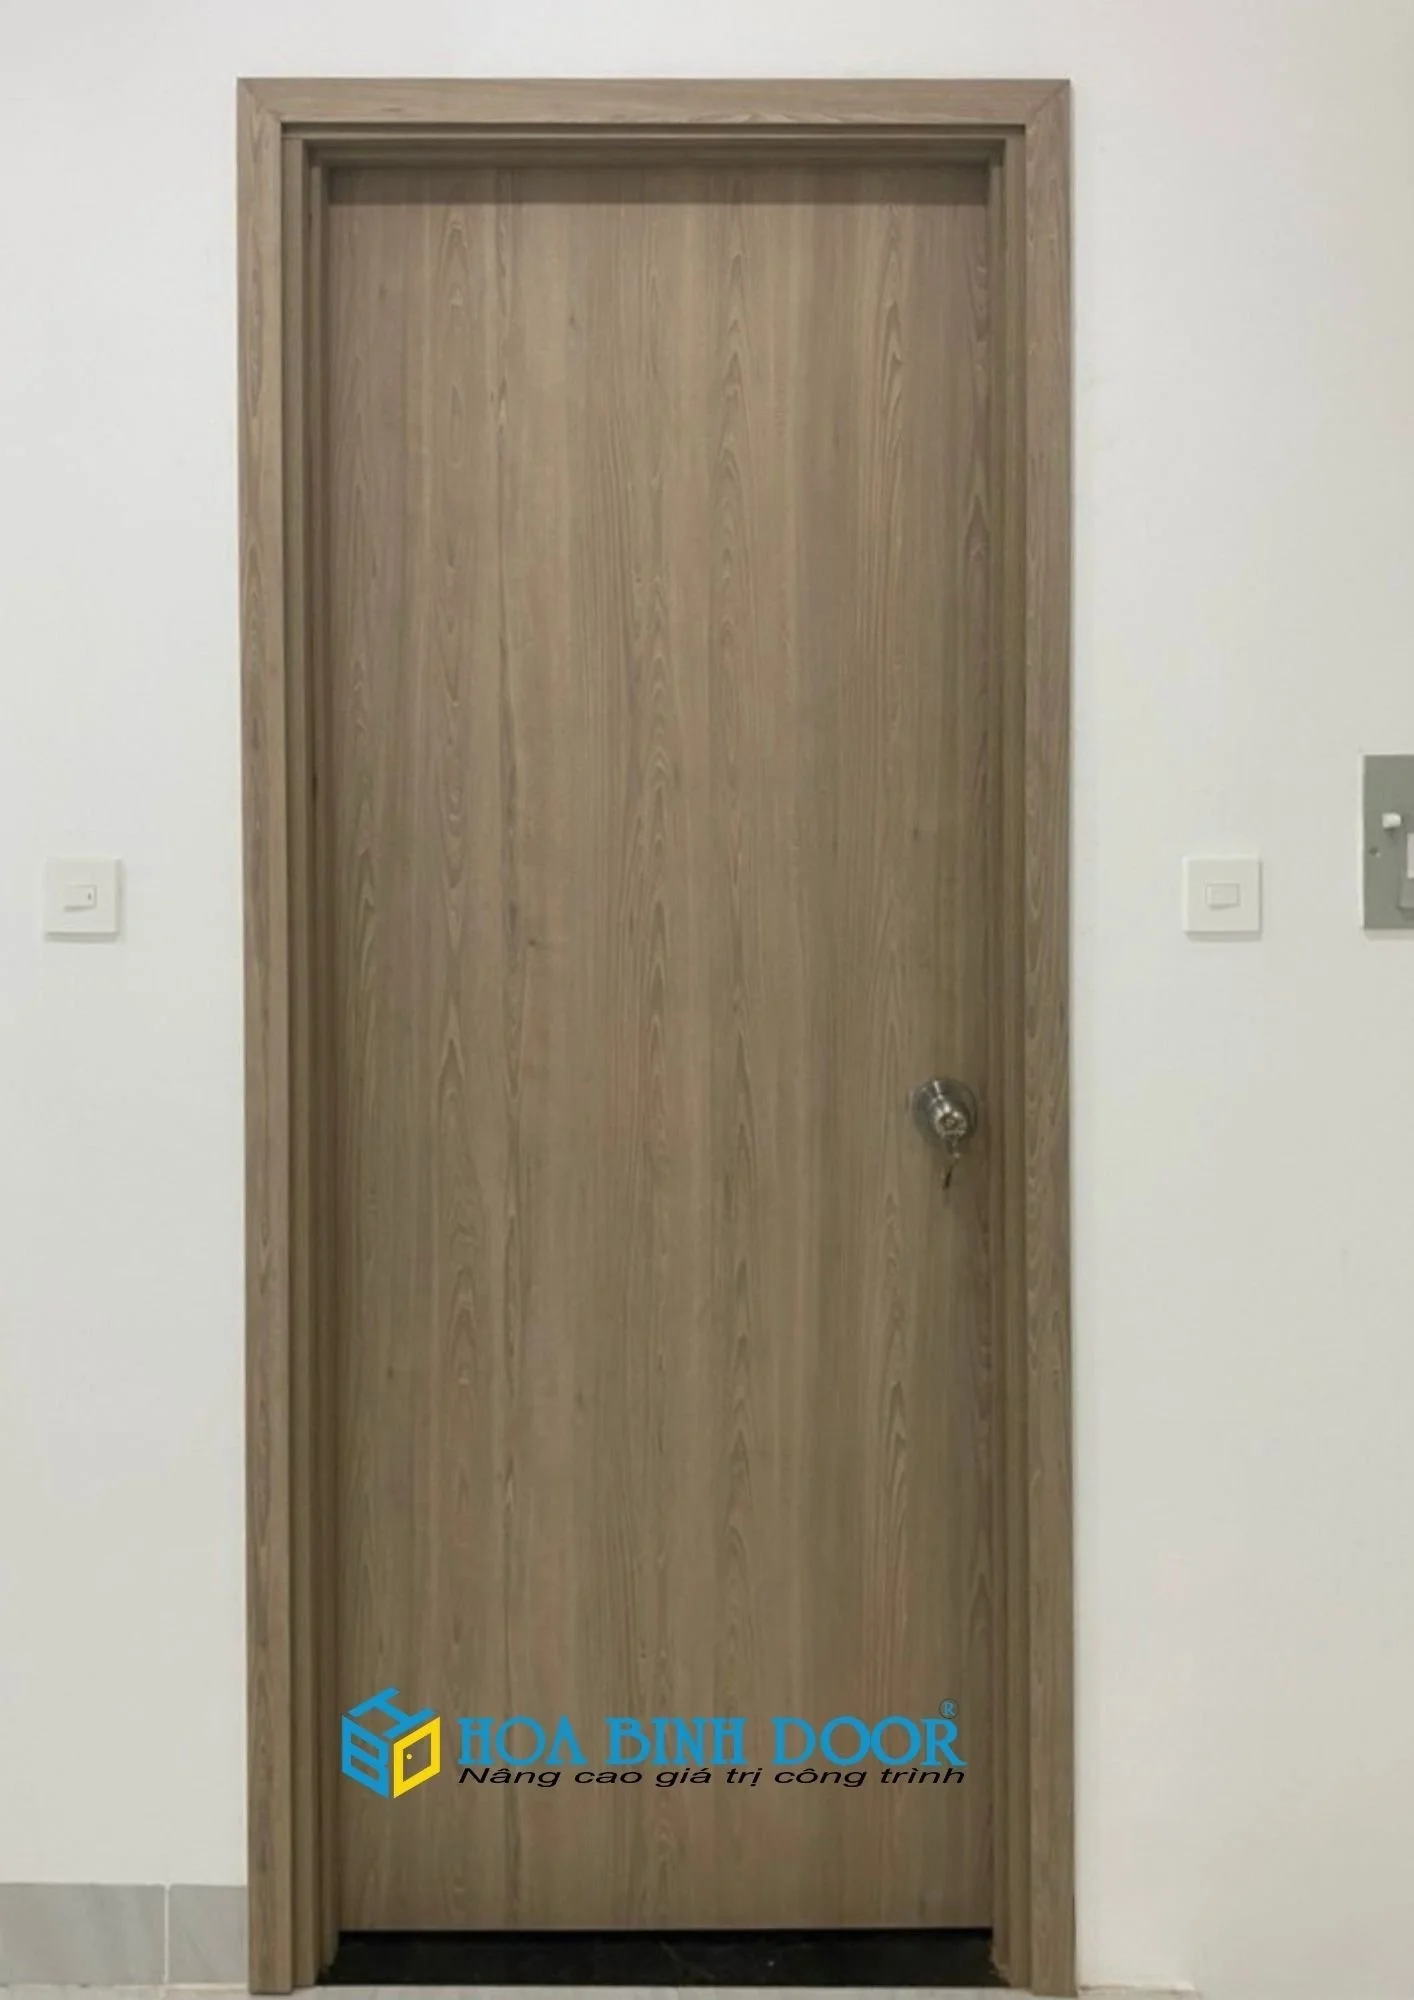 Nội, ngoại thất: Giá cửa gỗ công nghiệp phòng ngủ tại Lâm Đồng Z4977039469377_0d2bfd2bf06e69875433889faf14c4c6